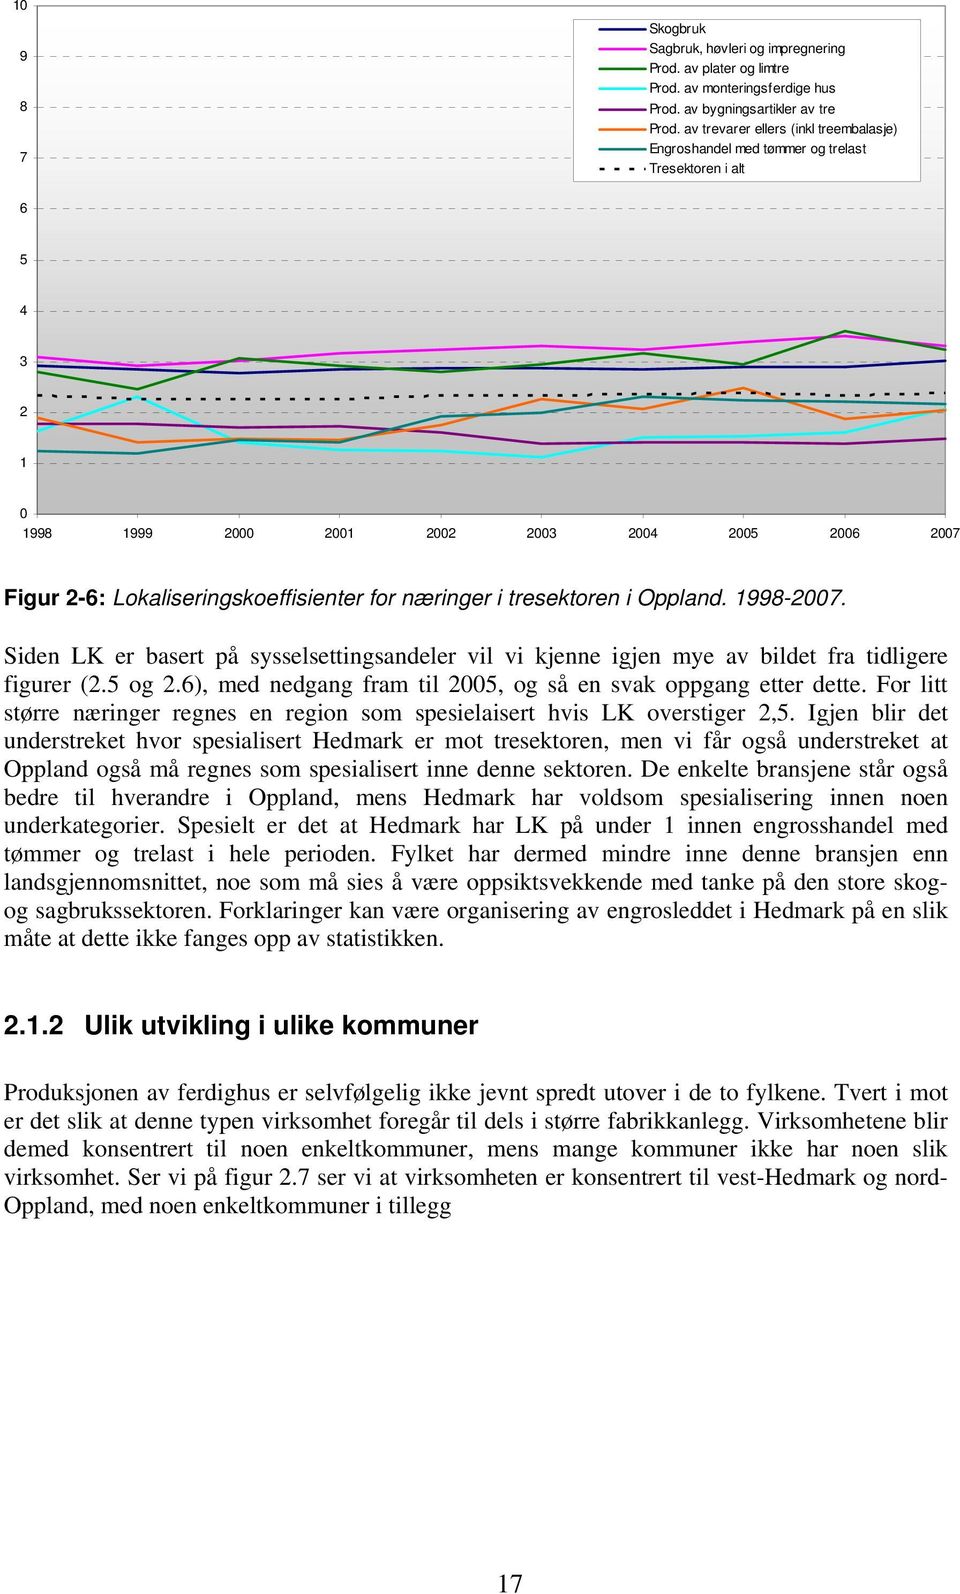 næringer i tresektoren i Oppland. 1998-2007. Siden LK er basert på sysselsettingsandeler vil vi kjenne igjen mye av bildet fra tidligere figurer (2.5 og 2.